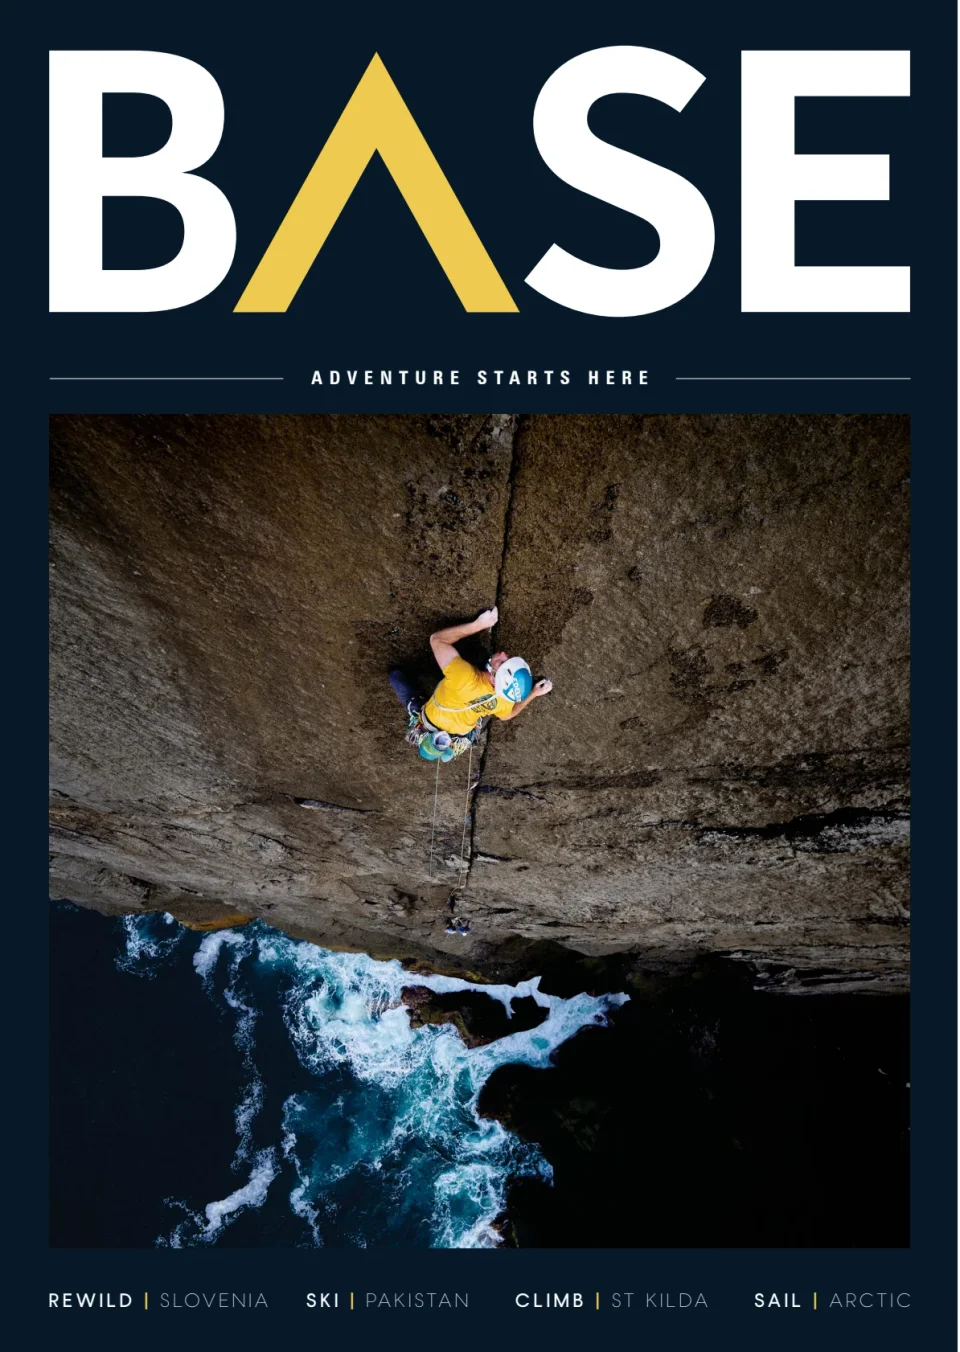 BASE Magazine